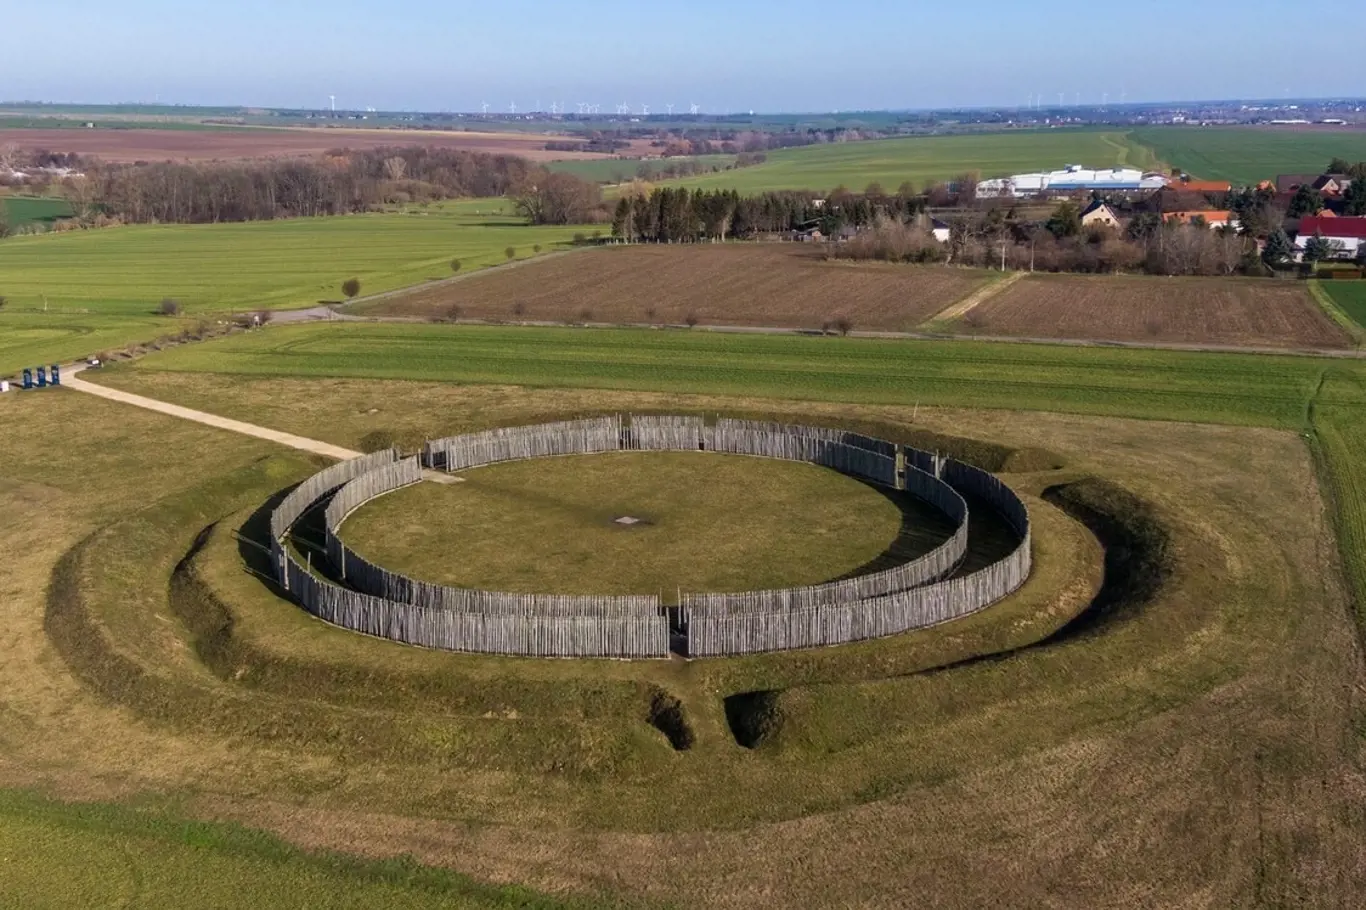 Zrekonstruovaný rondel Goseck v Německu